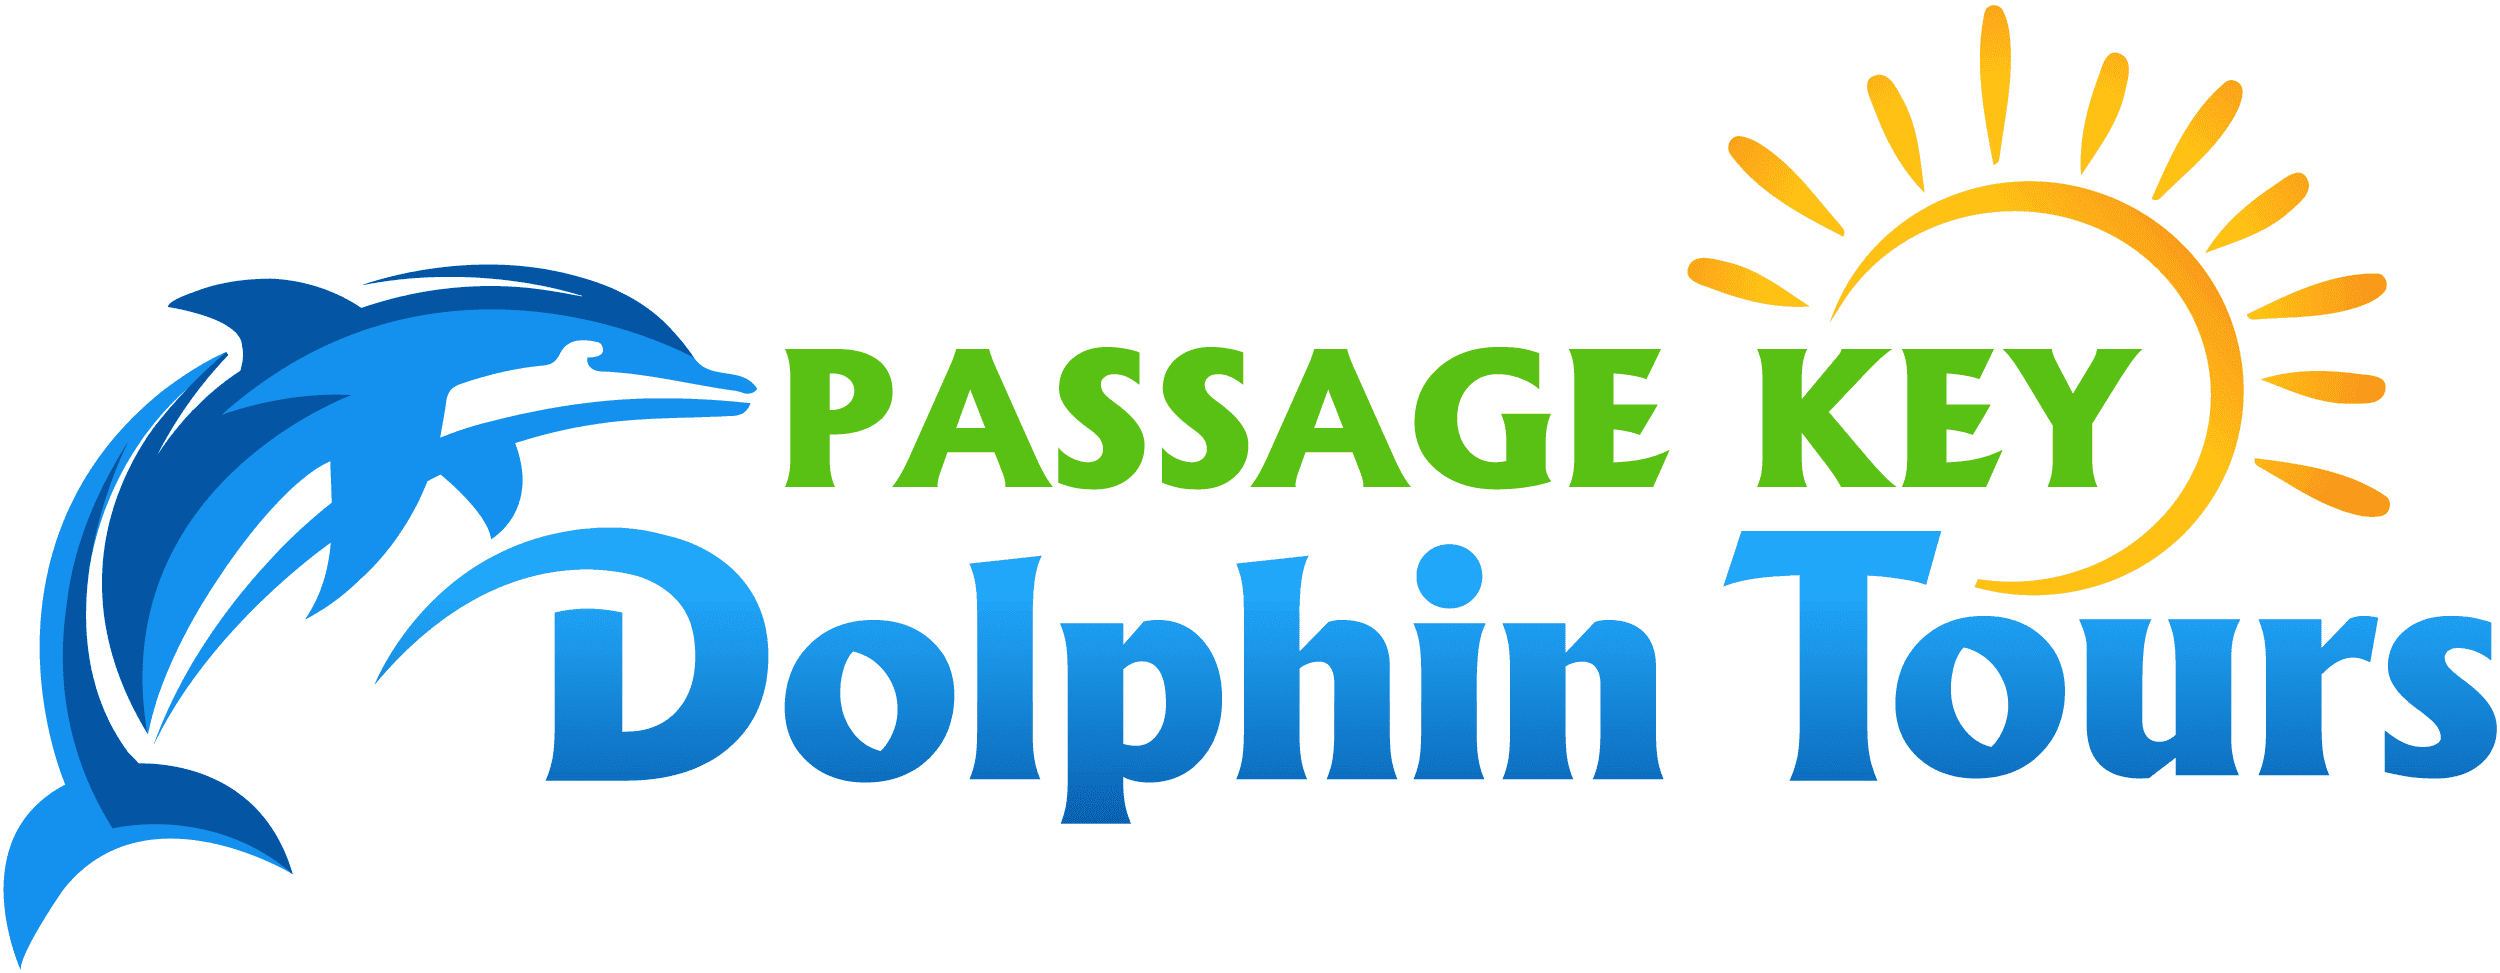 Passage Key Dolphin Tours logo